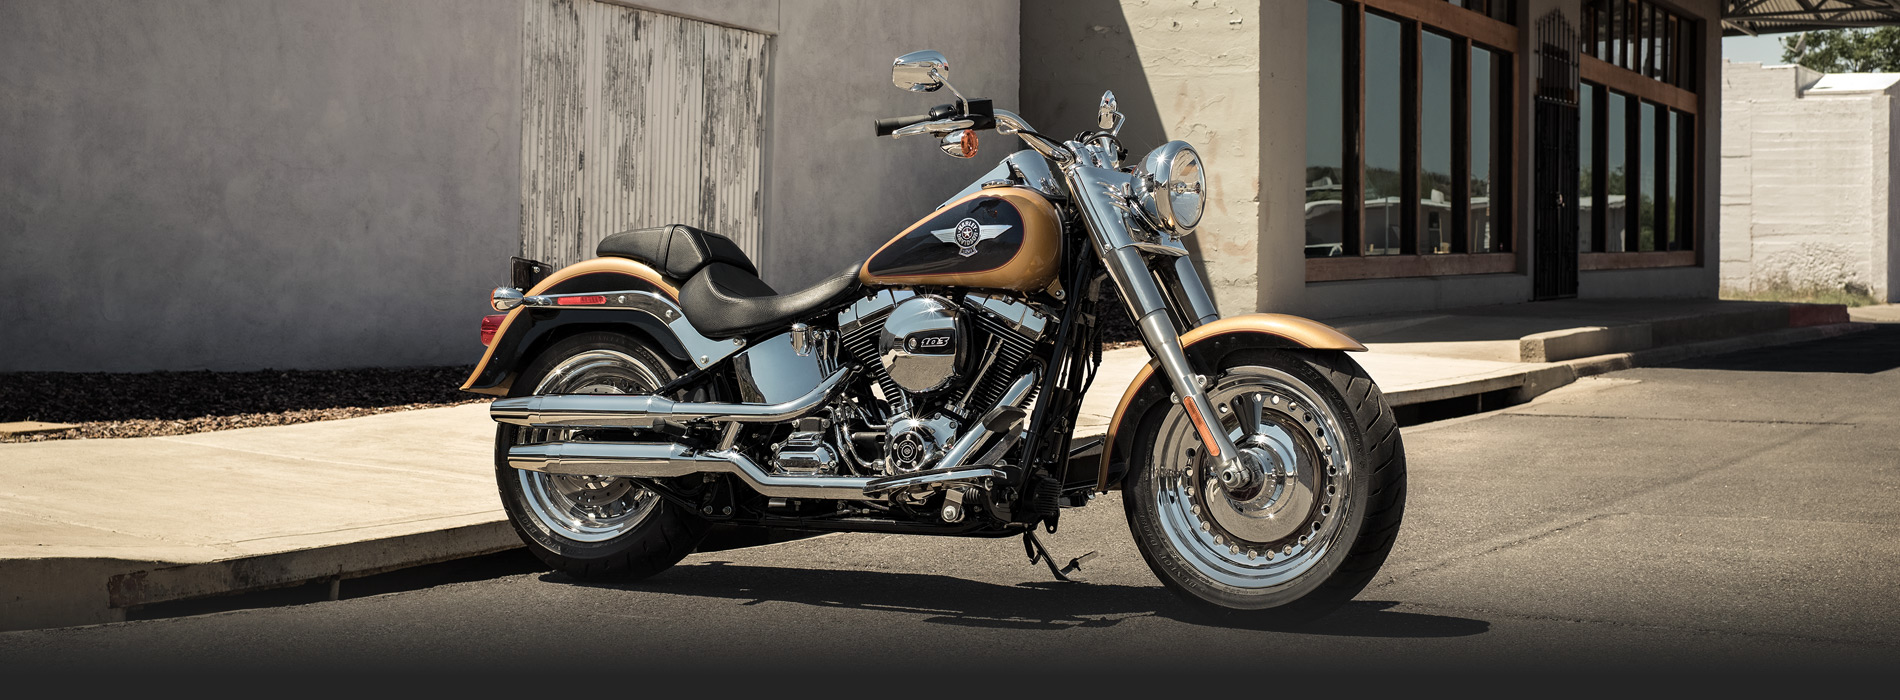 Images of Harley-Davidson Fat Boy | 1900x700